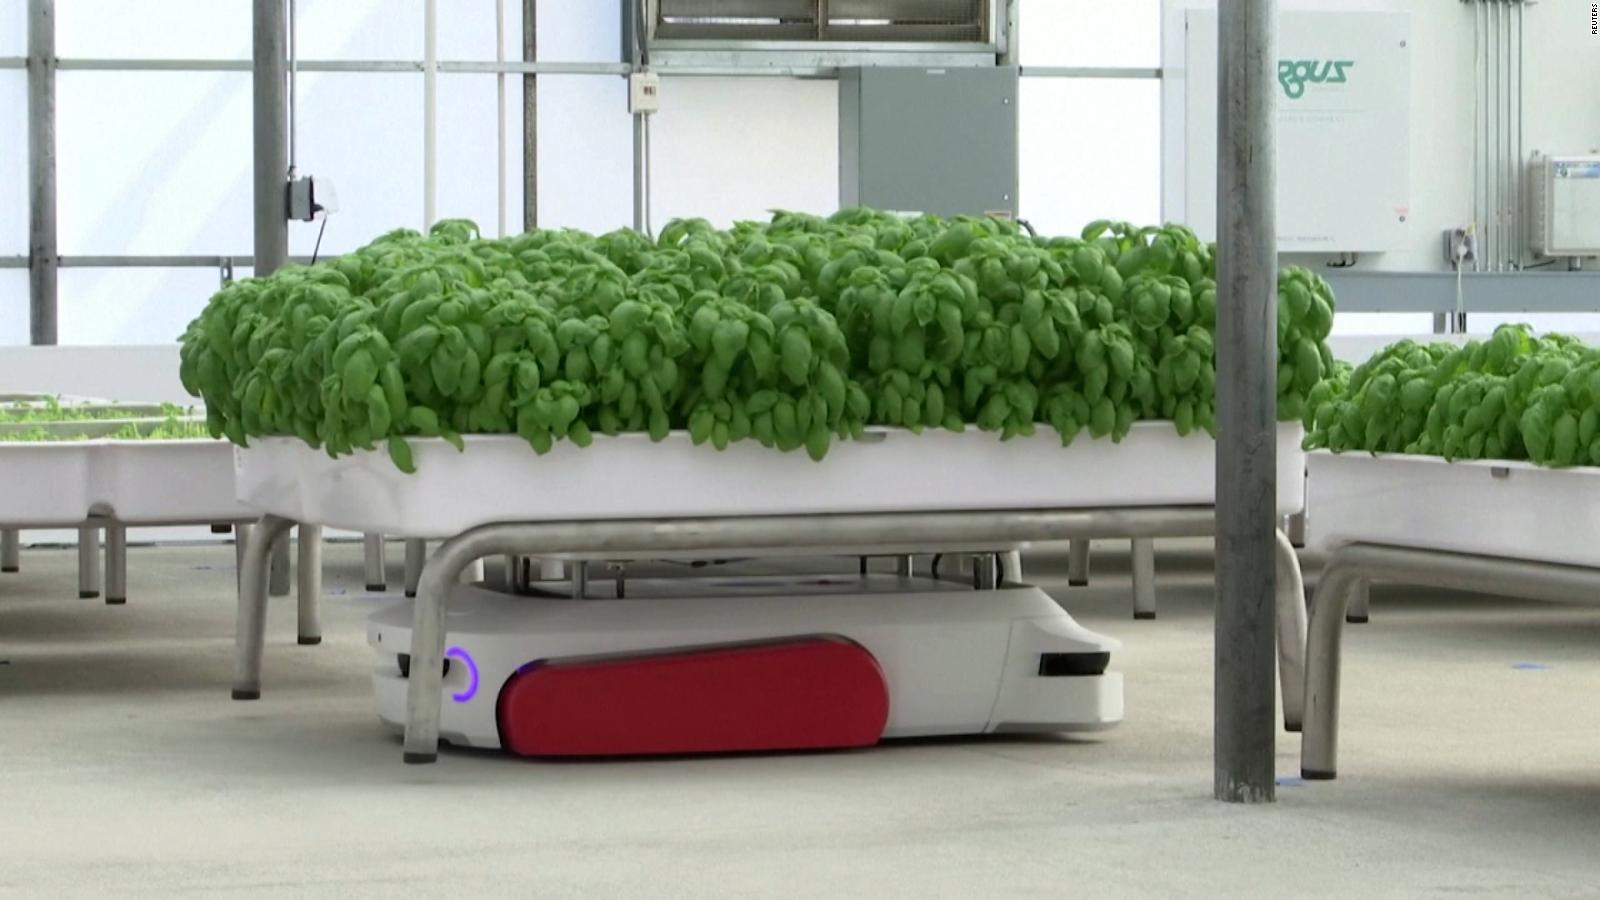 Conoce a los robots ahorradores de agua que cultivan productos